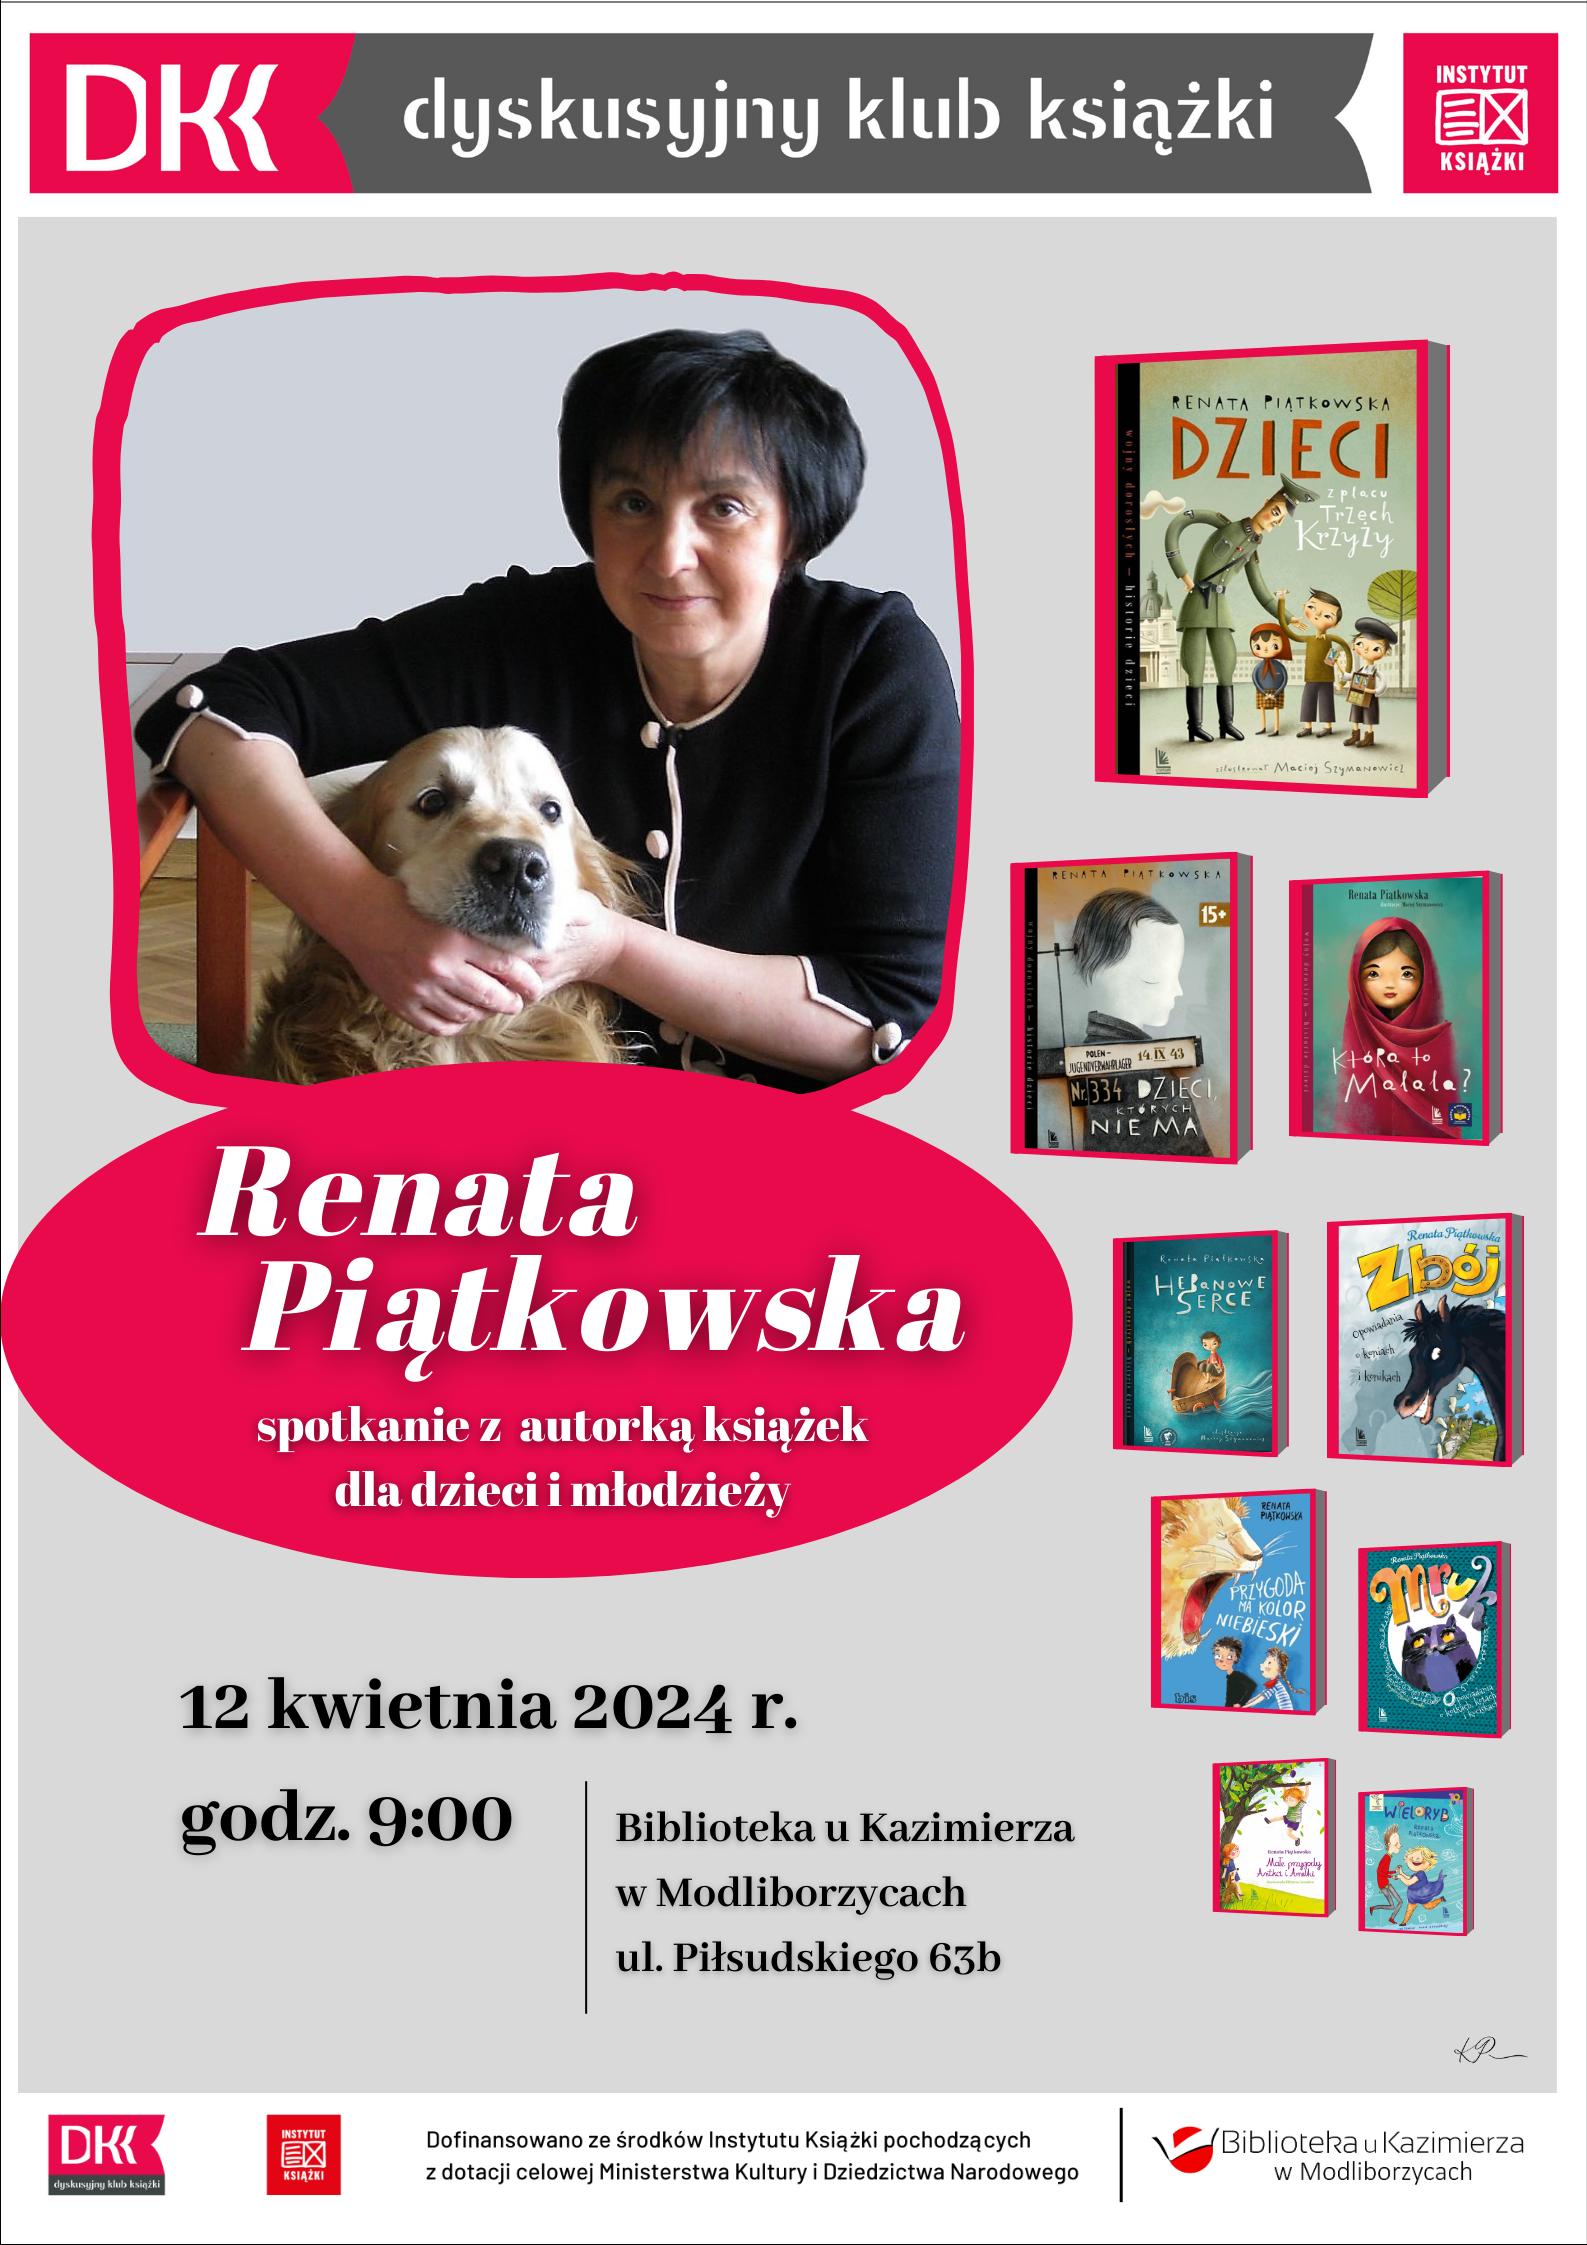  Renata Piątkowska, ceniona pisarka książek dla dzieci, uhonorowana tytułem Kawaler Orderu Uśmiechu będzie gościem spotkania, które odbędzie się 12 kwietnia 2024 r. w Bibliotece u Kazimierza, godz. 9:00